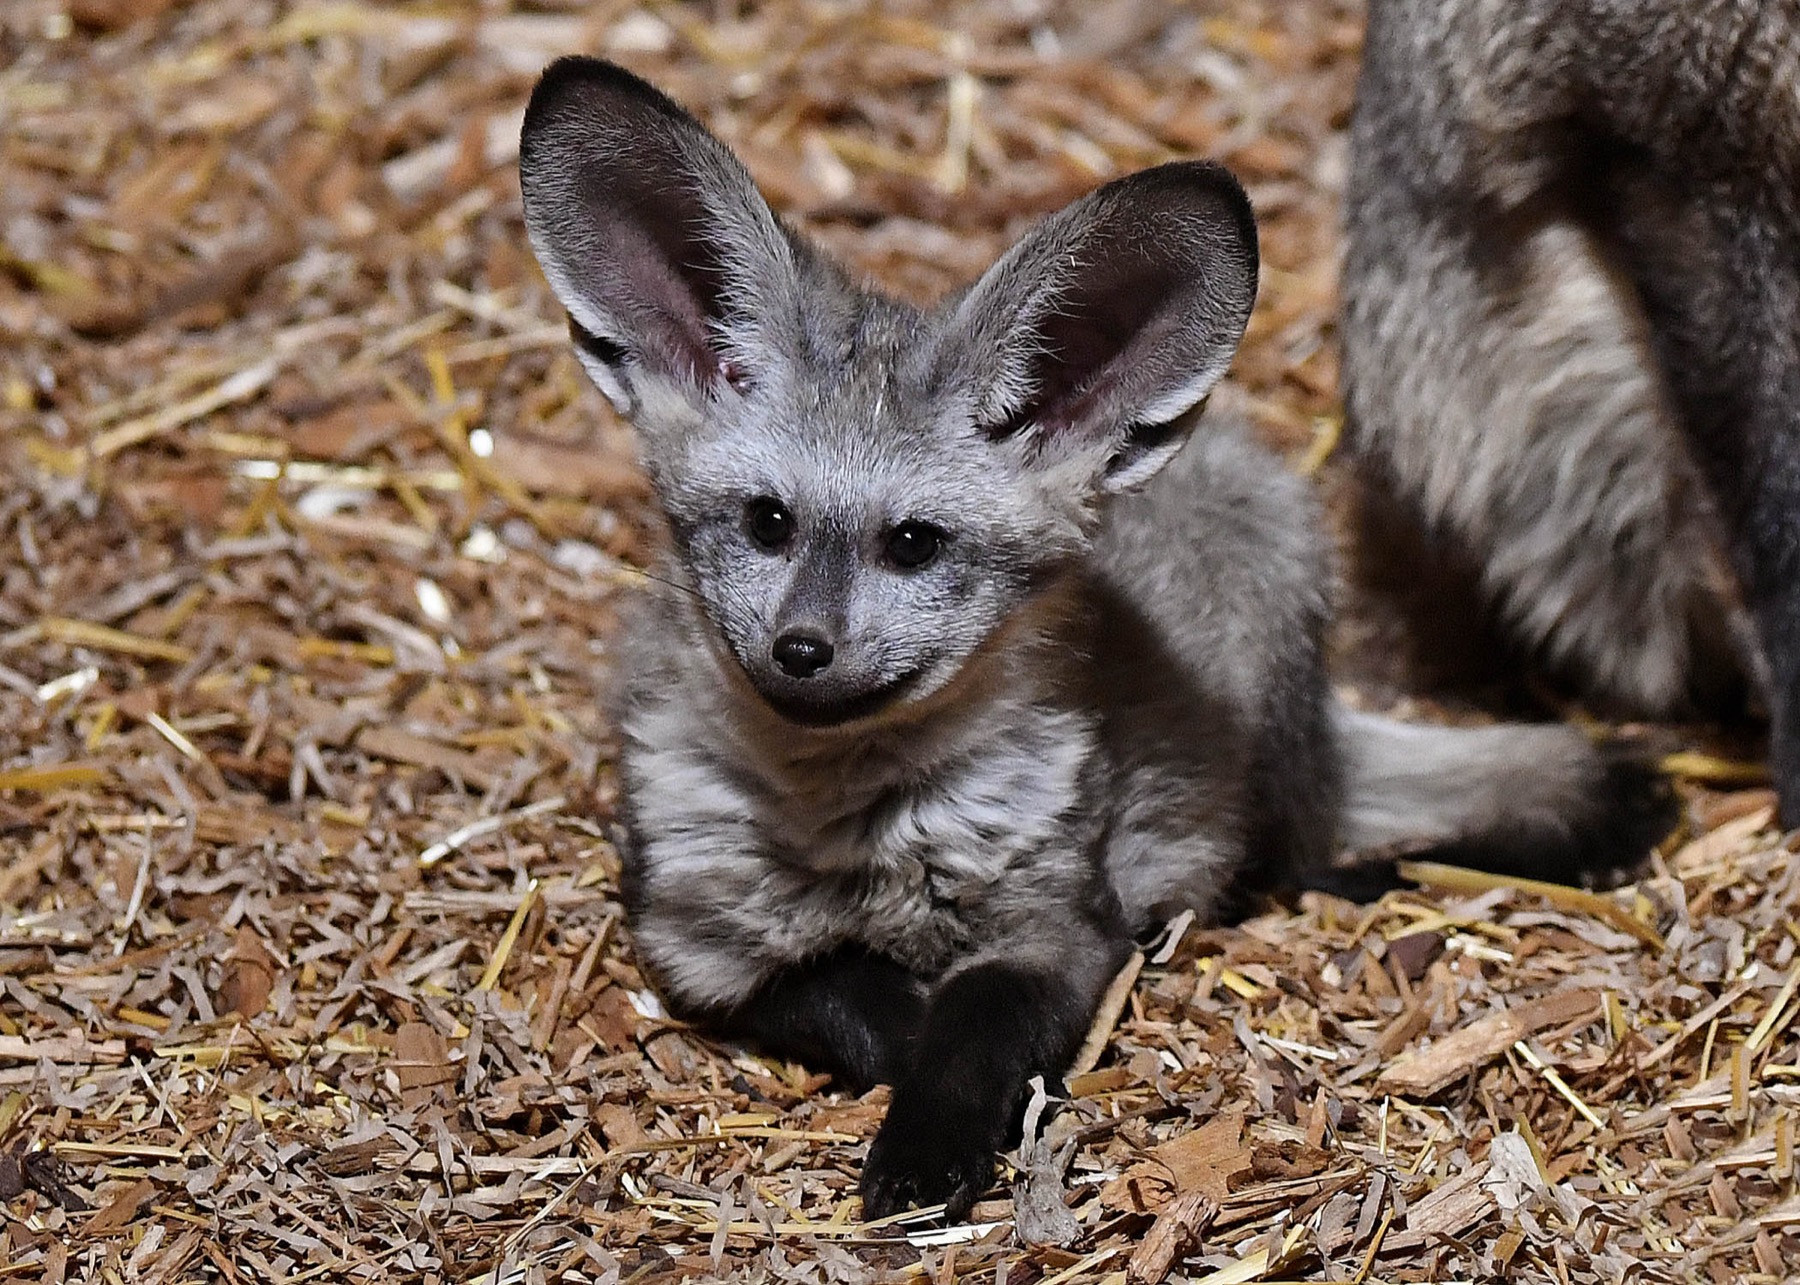 Bat eared fox kit at Brookfield Zoo